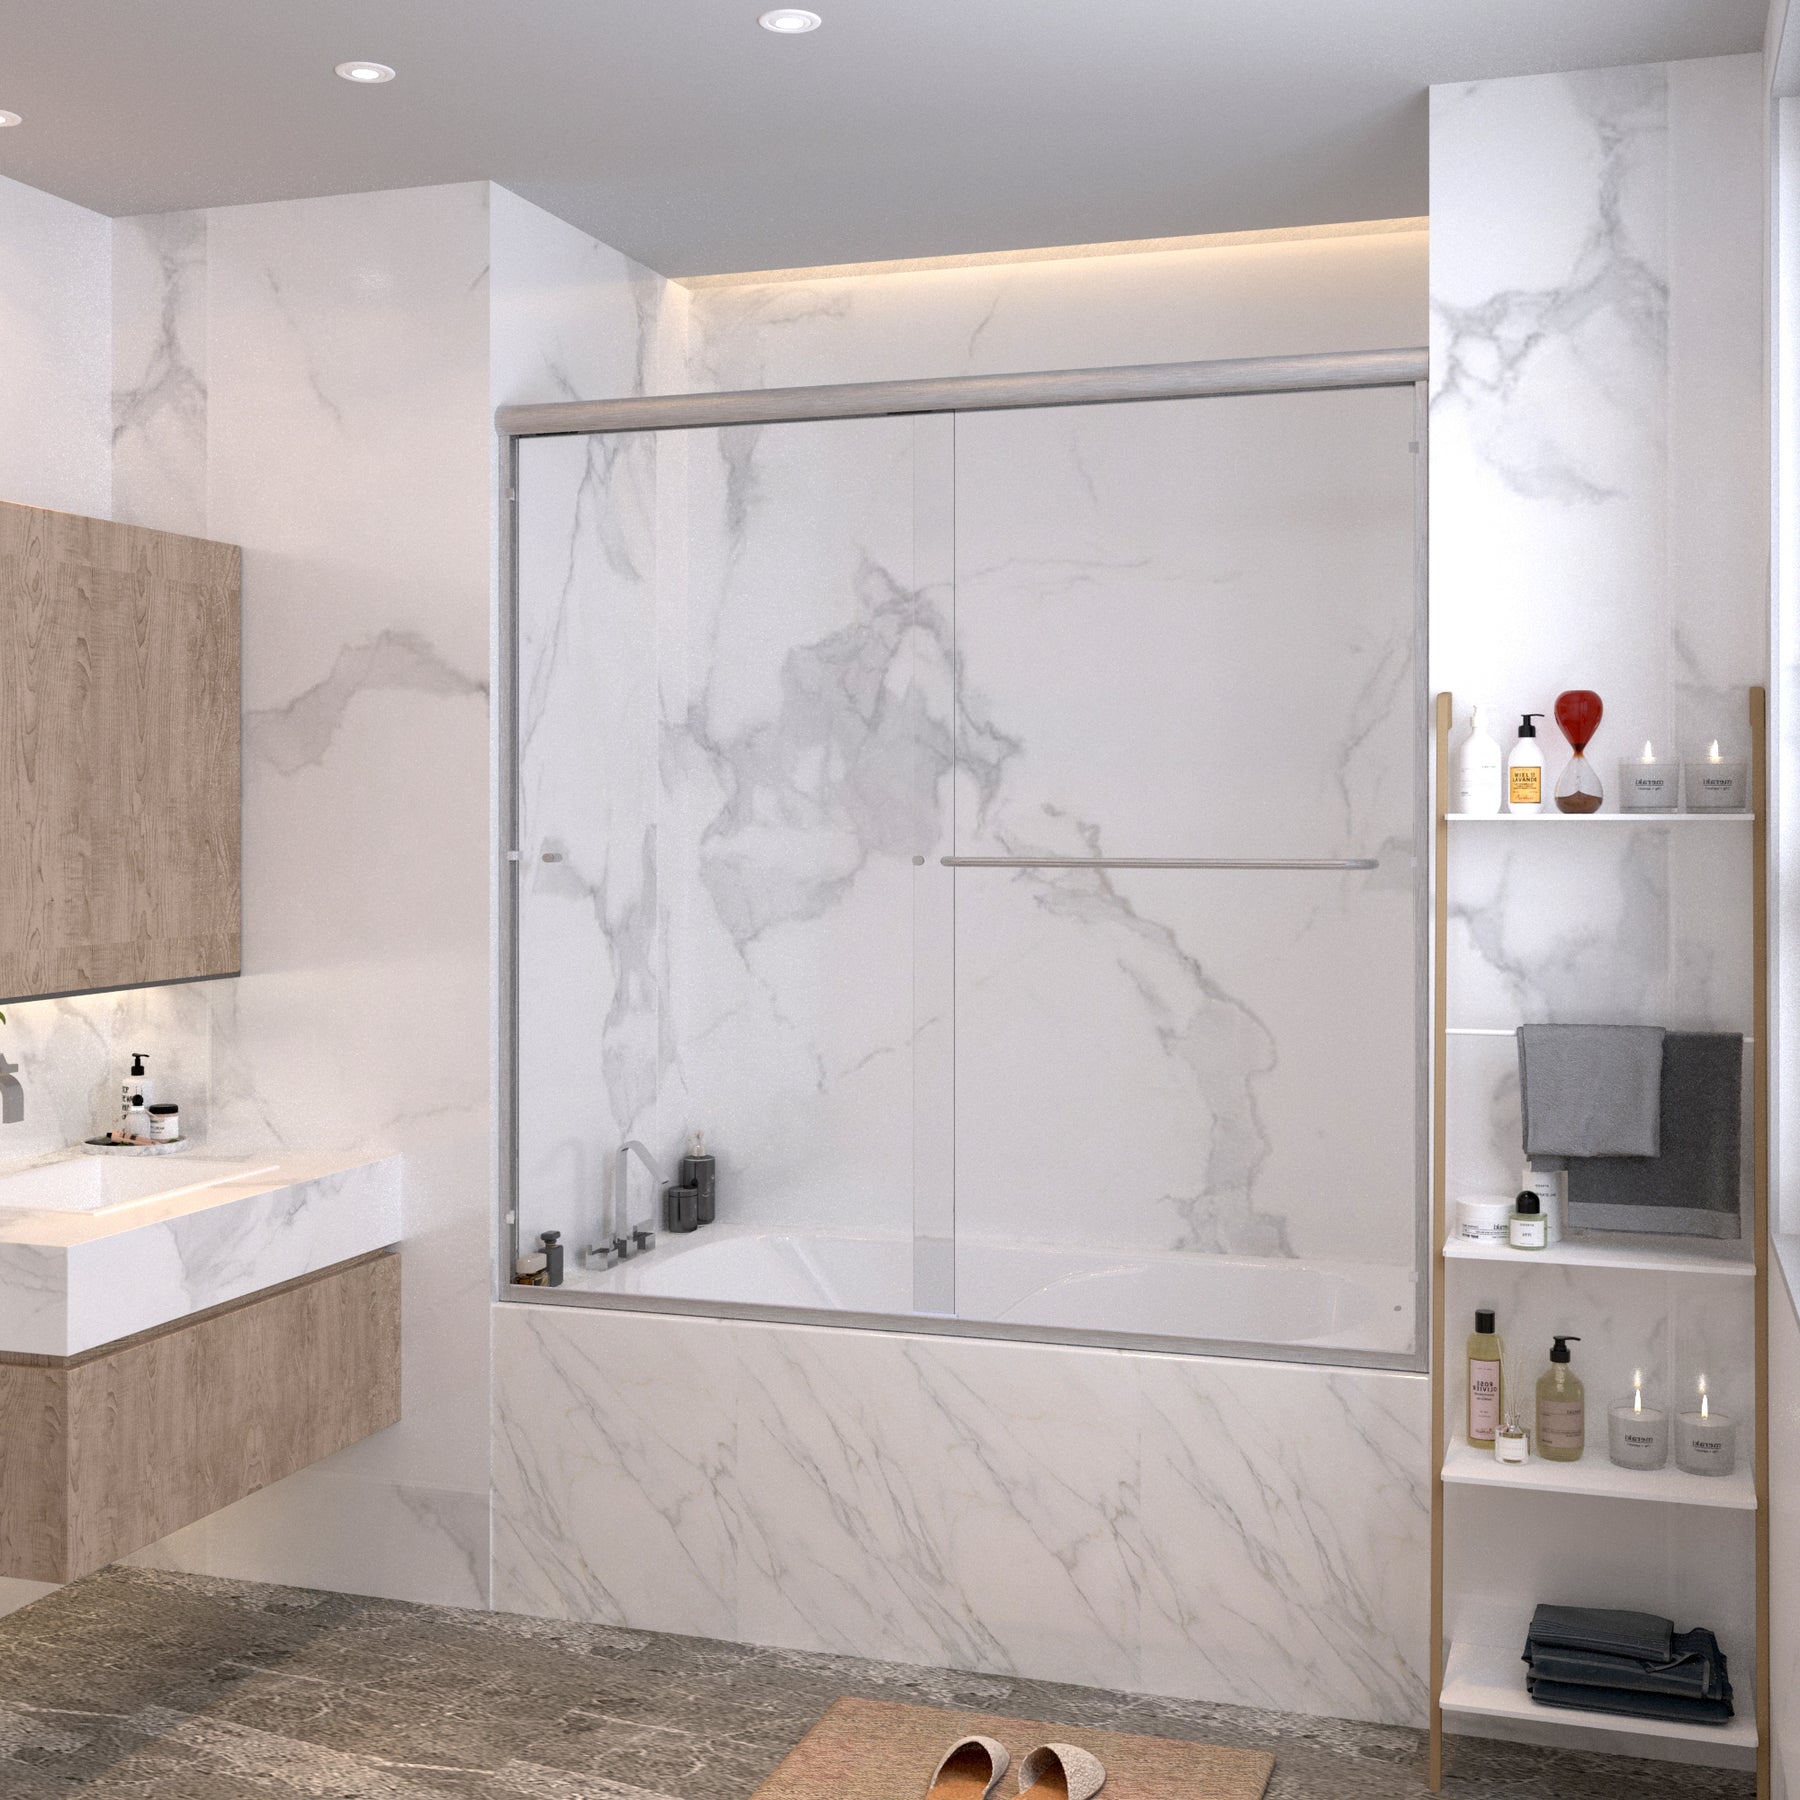 SL4U Bathroom Clear Glass Brushed Nickel Finish Framed Bathtub Double Sliding Shower, 60" W x 57 3/8" H Door.